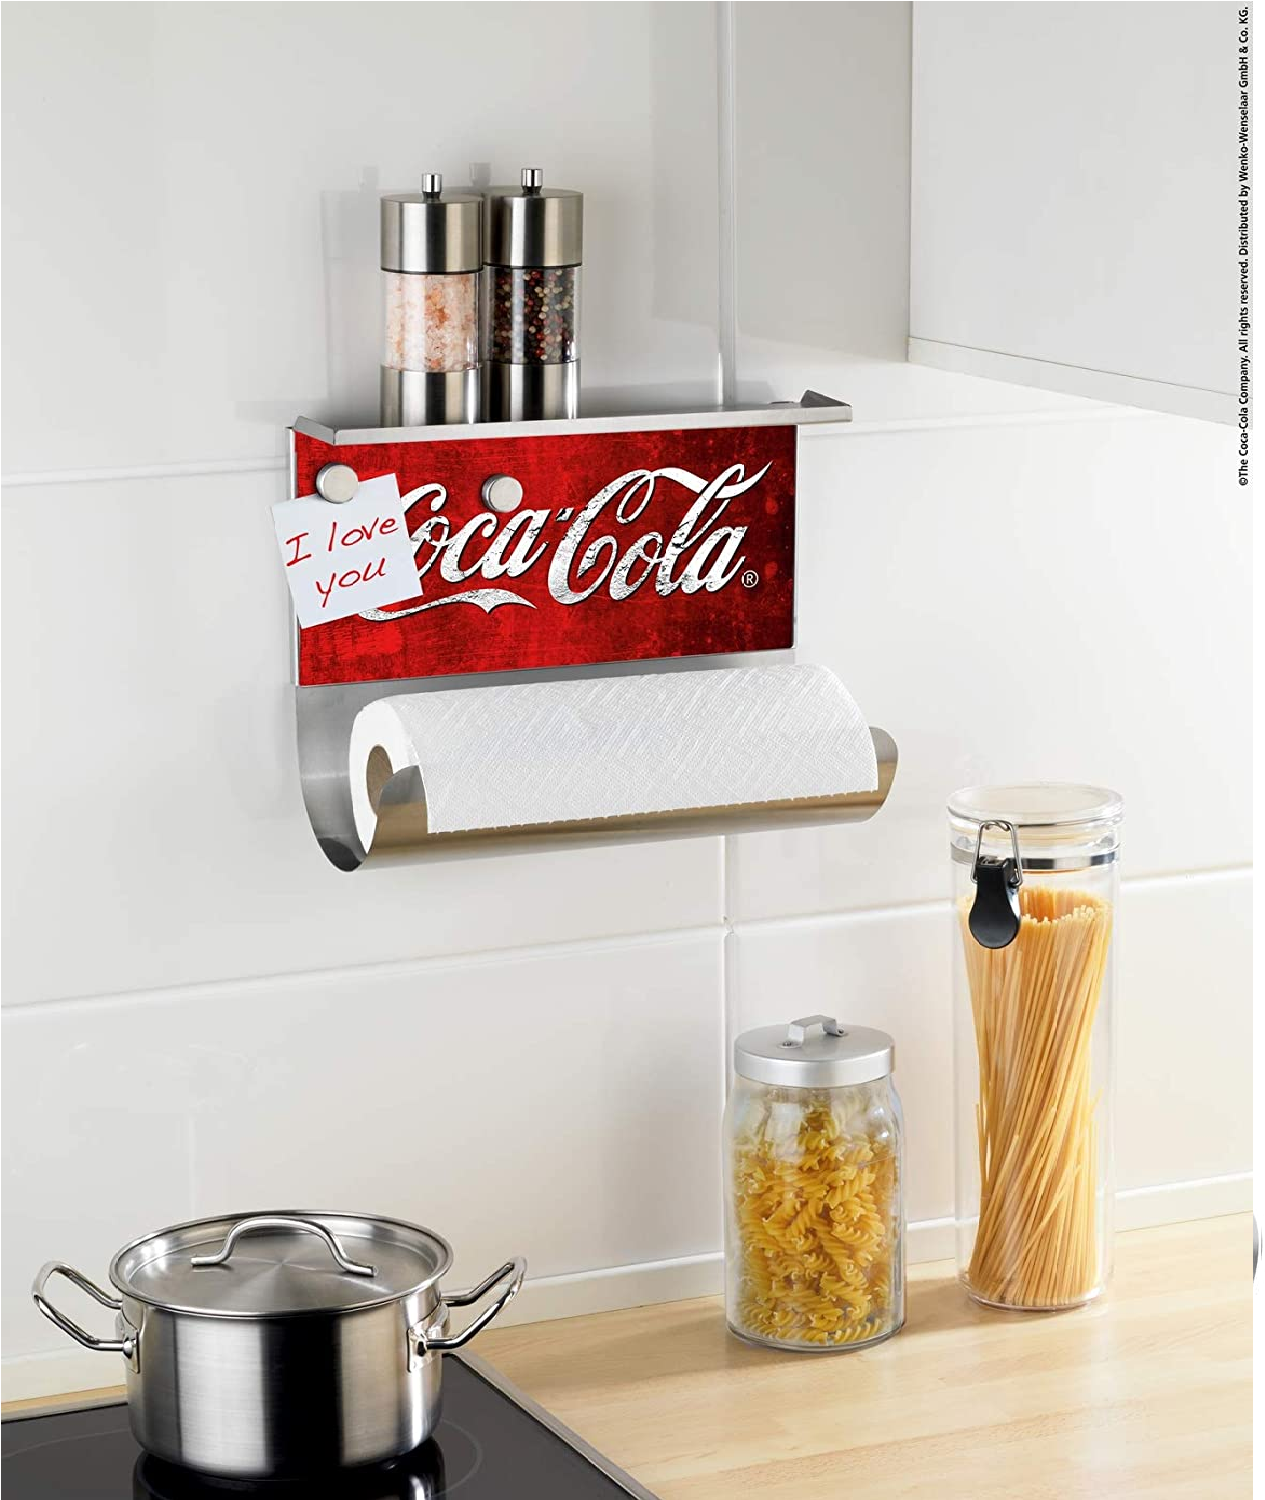 Küchen-Papier-Rollen-Halter mit Ablage für Salz-Pfeffer-Streuer oder Gewürze, magnetische Pinnwand, Motiv Coca-Cola, 14.5 x 30 x 26 cm